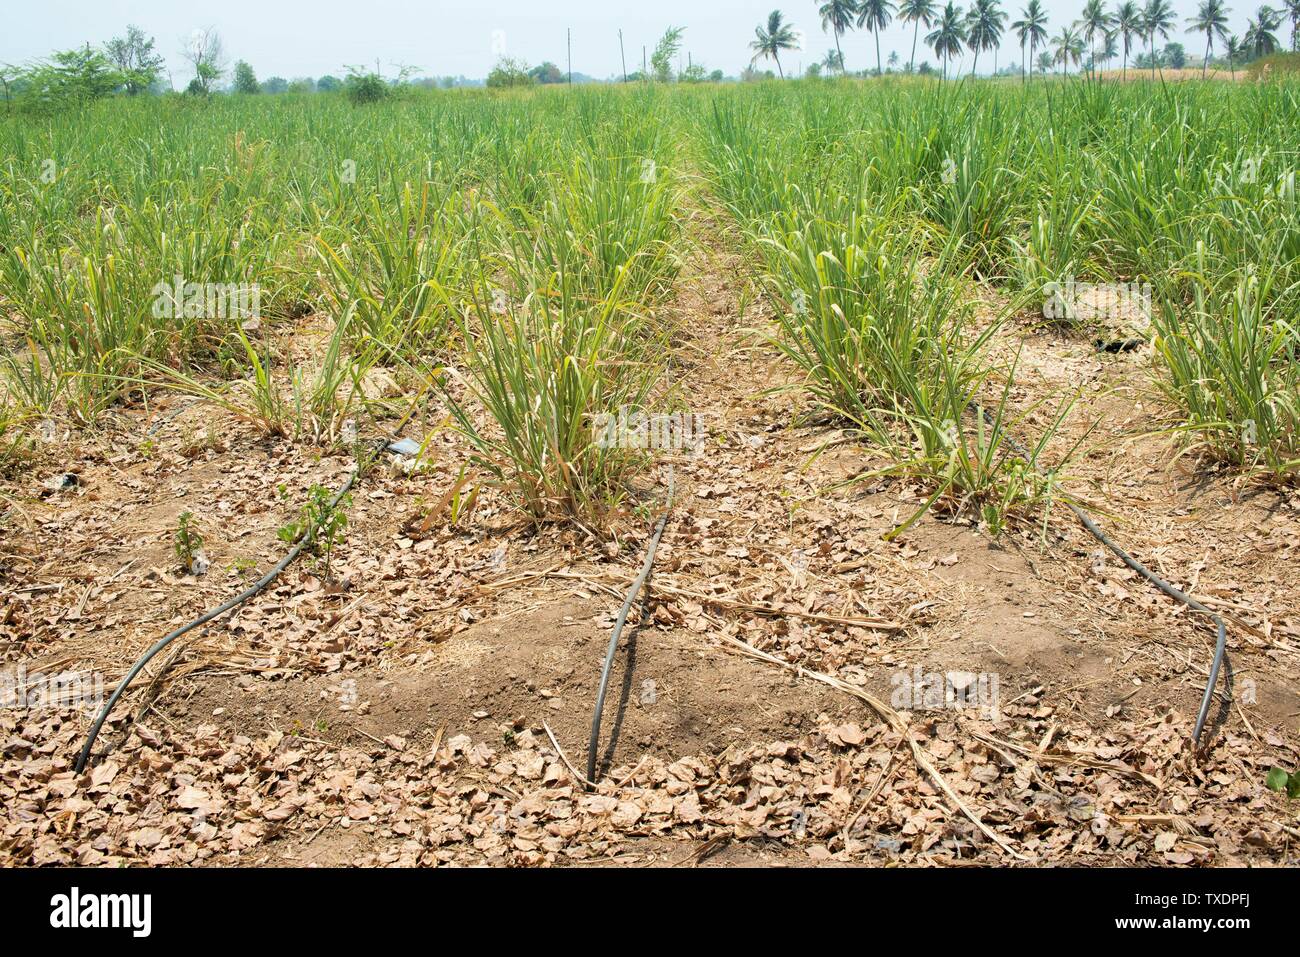 Sugarcane crop with drip irrigation, Baramati, Maharashtra, India, Asia Stock Photo